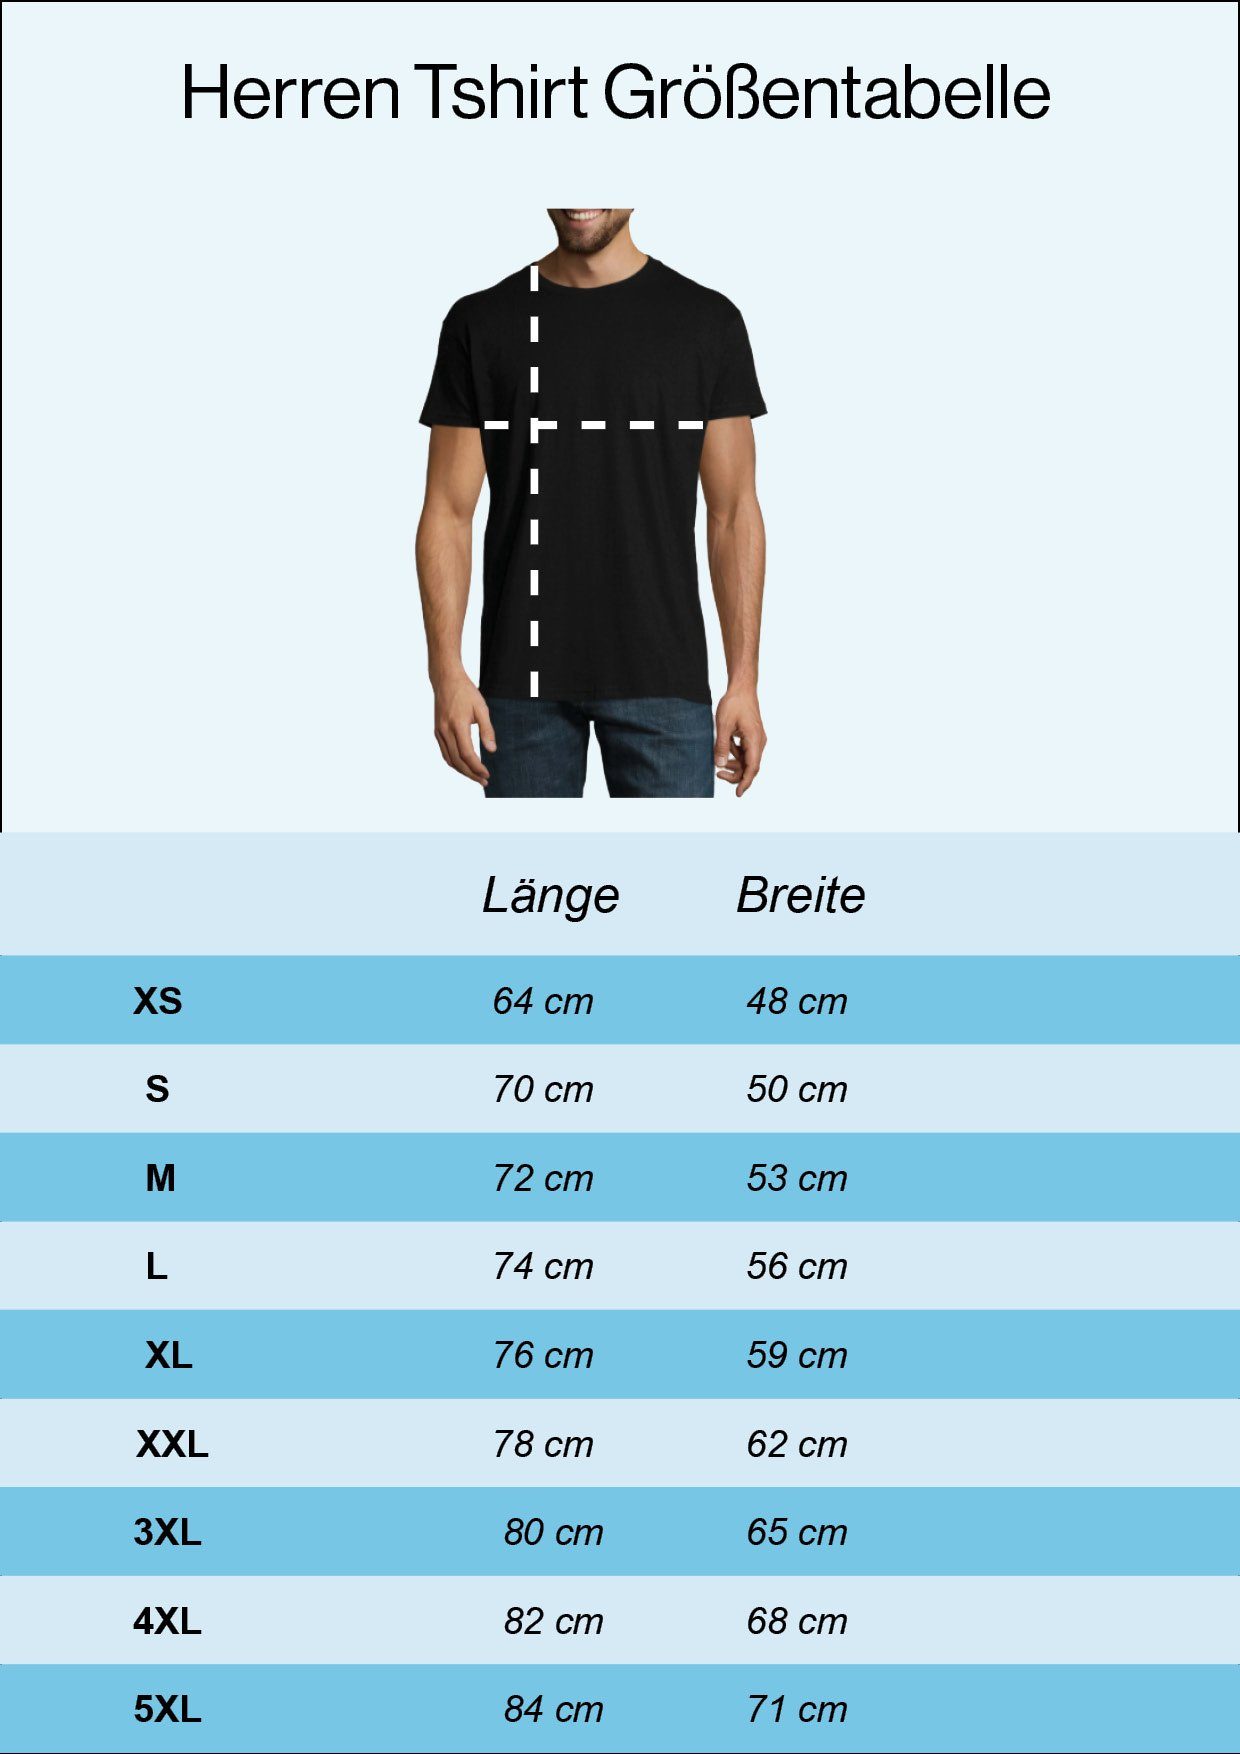 Youth Designz T-Shirt Herren Zockershirt mit Gaming Offizielles lustigem Schwarz Frontprint